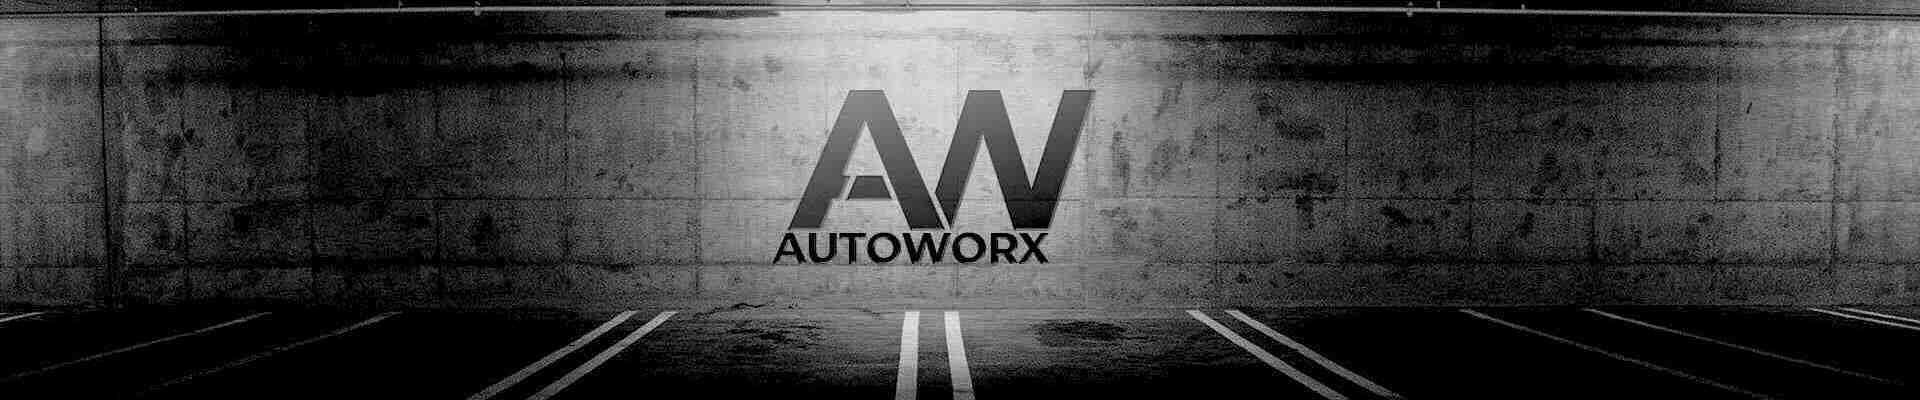 fotoalbum Autoworx